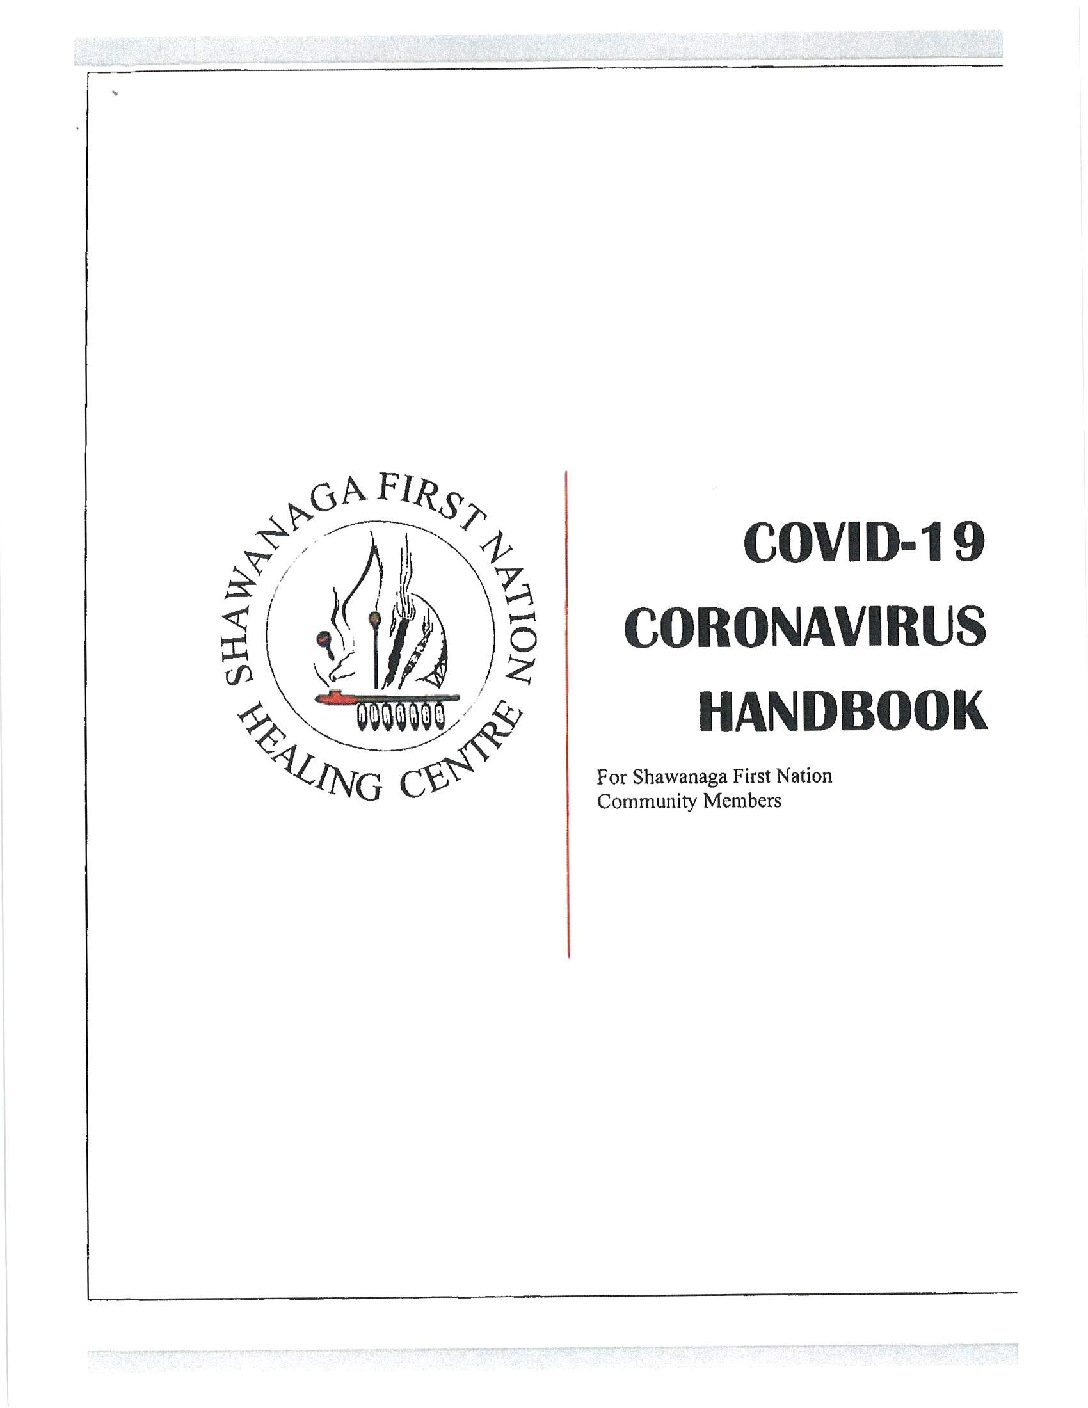 COVID-19 Coronavirus Handbook